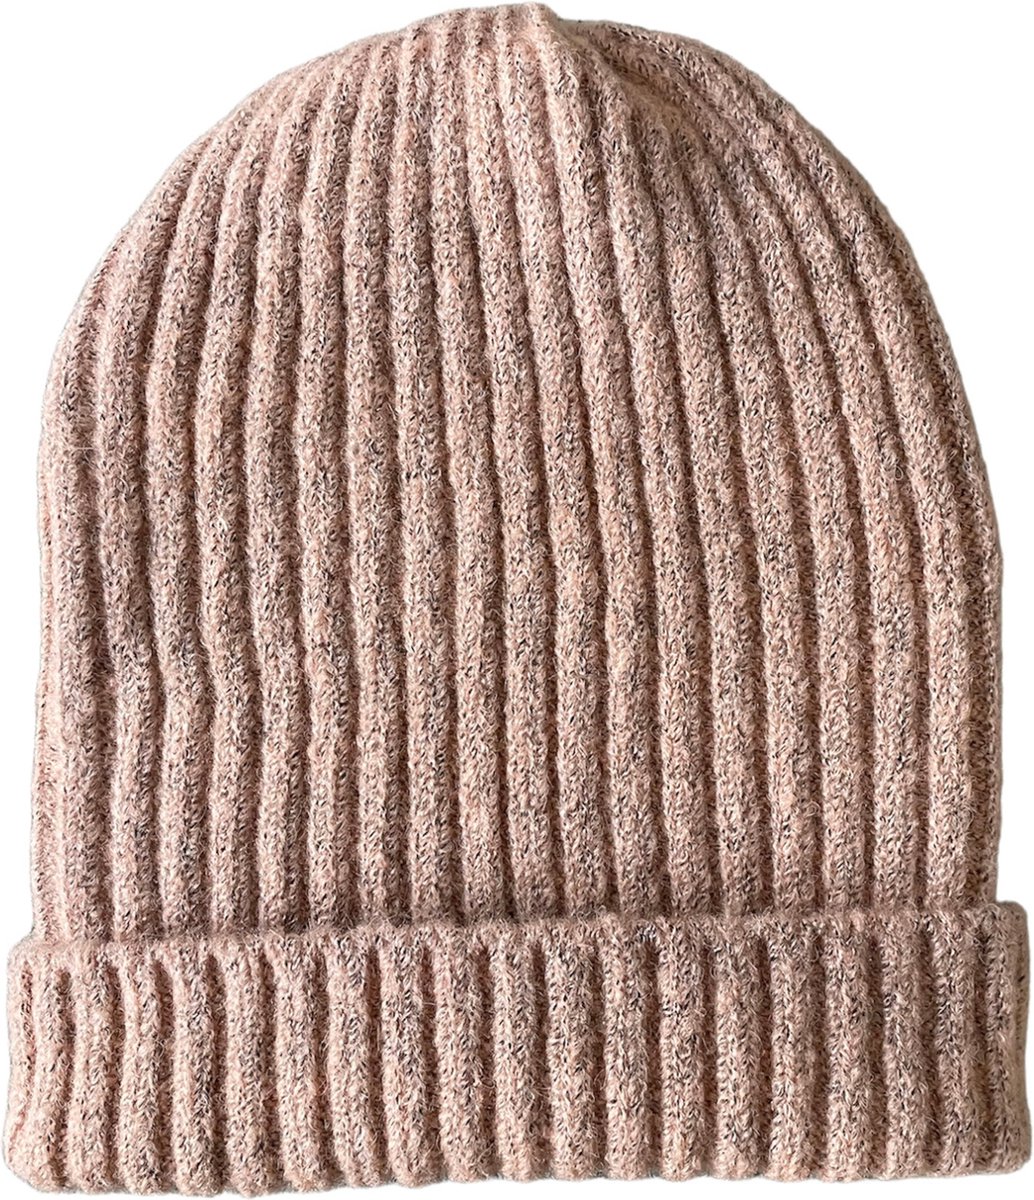 ASTRADAVI Beanie Hats - Muts - Warme Skimutsen Hoofddeksels - Trendy Winter Mutsen - Lichtroze